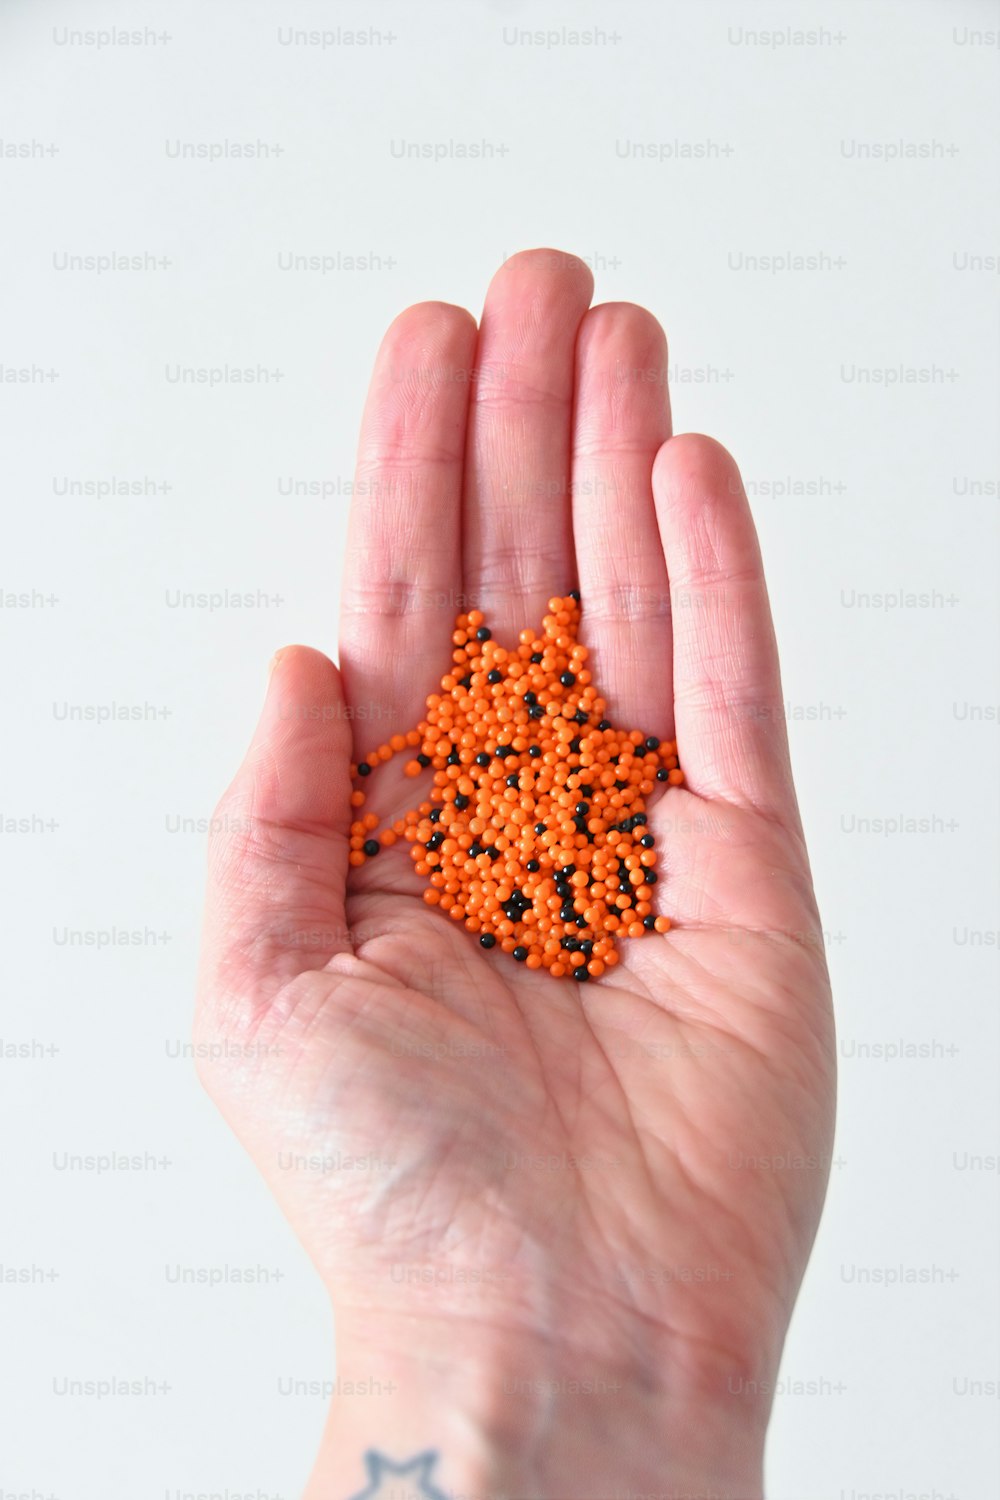 Una mano sosteniendo un pequeño objeto naranja en su palma